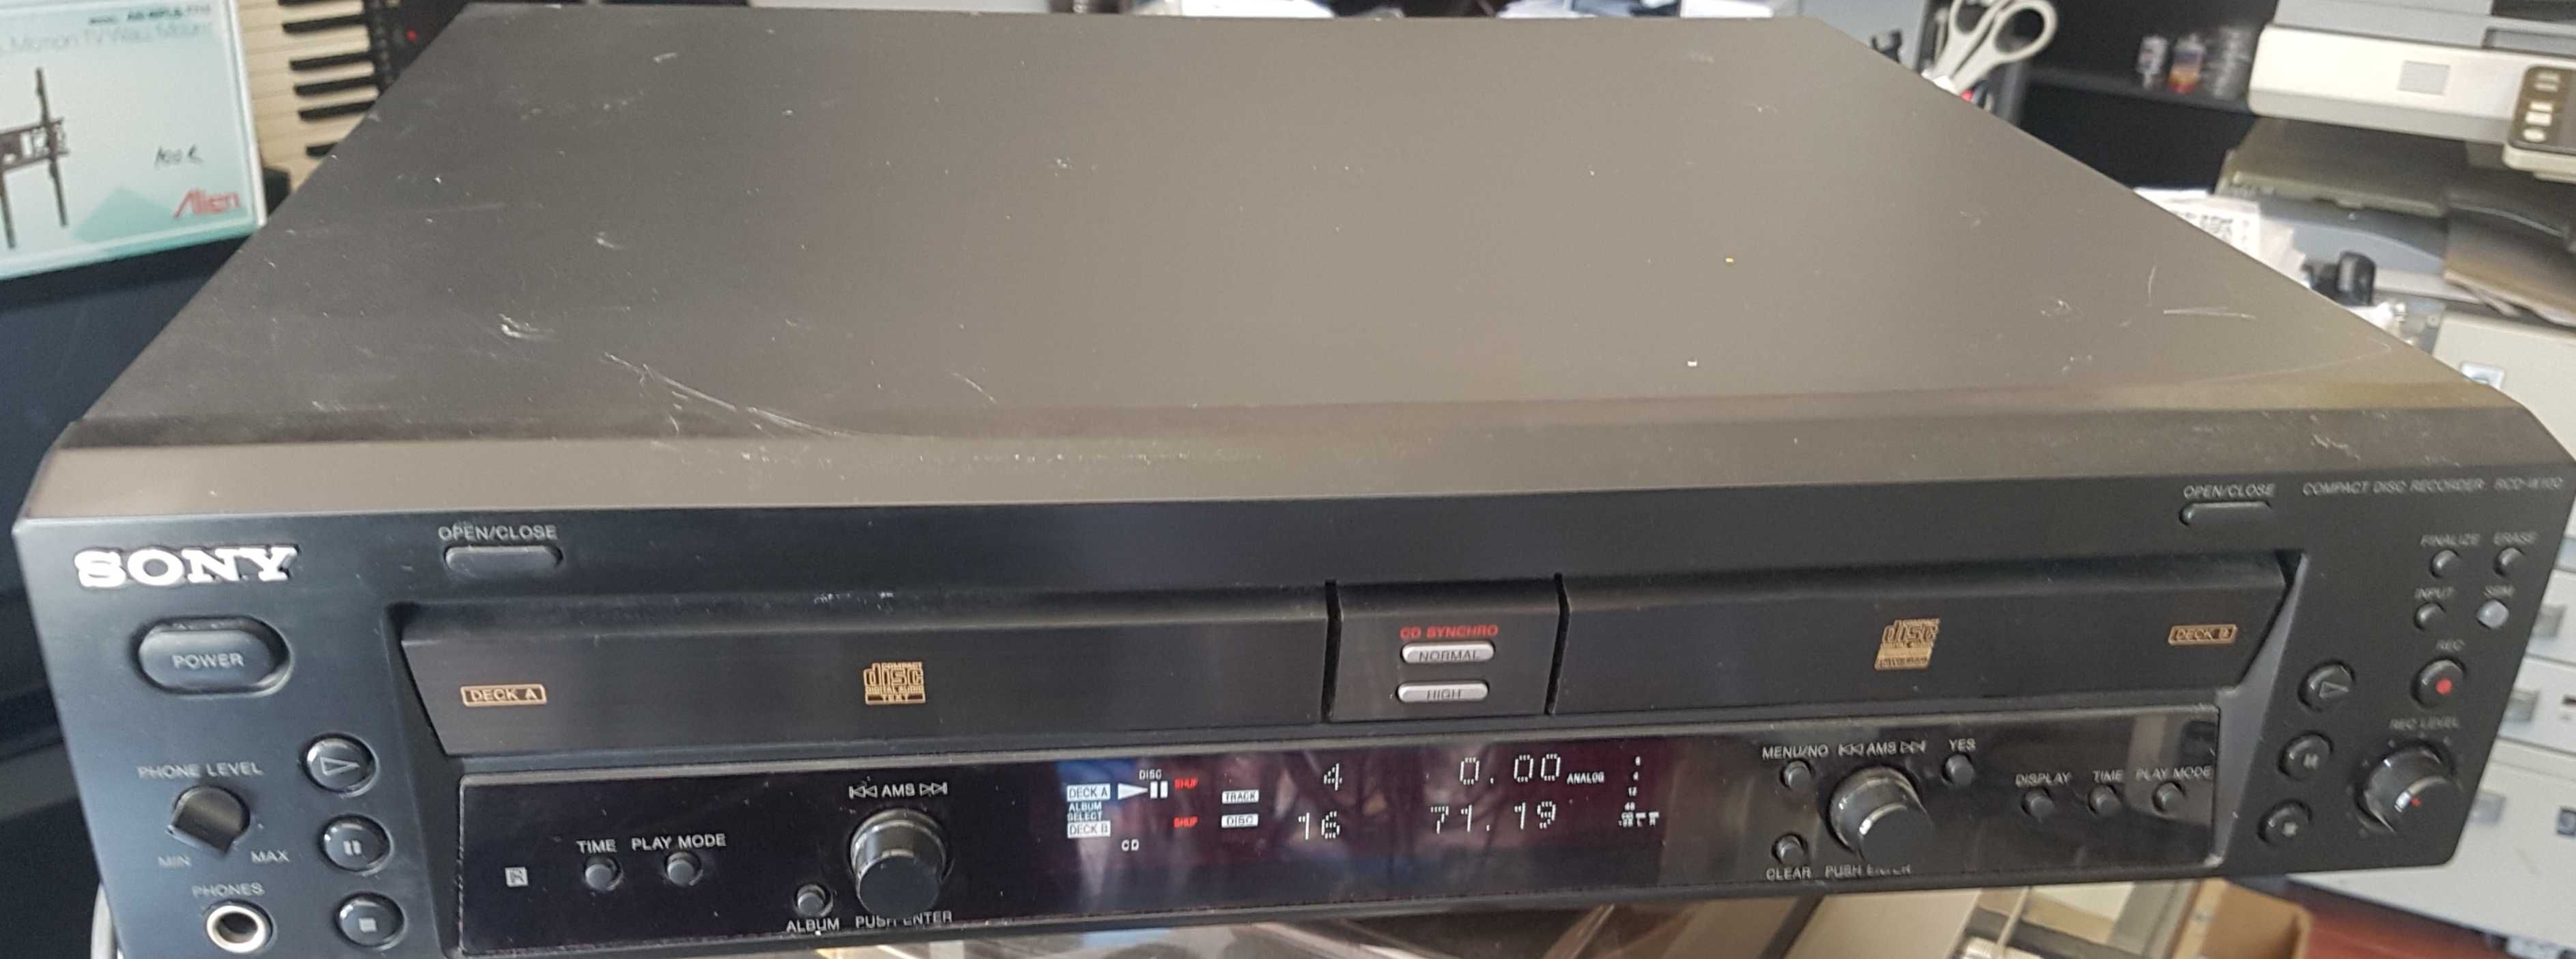 Sony RCD-W100 cd audio recorder in stare perfecta de functionare